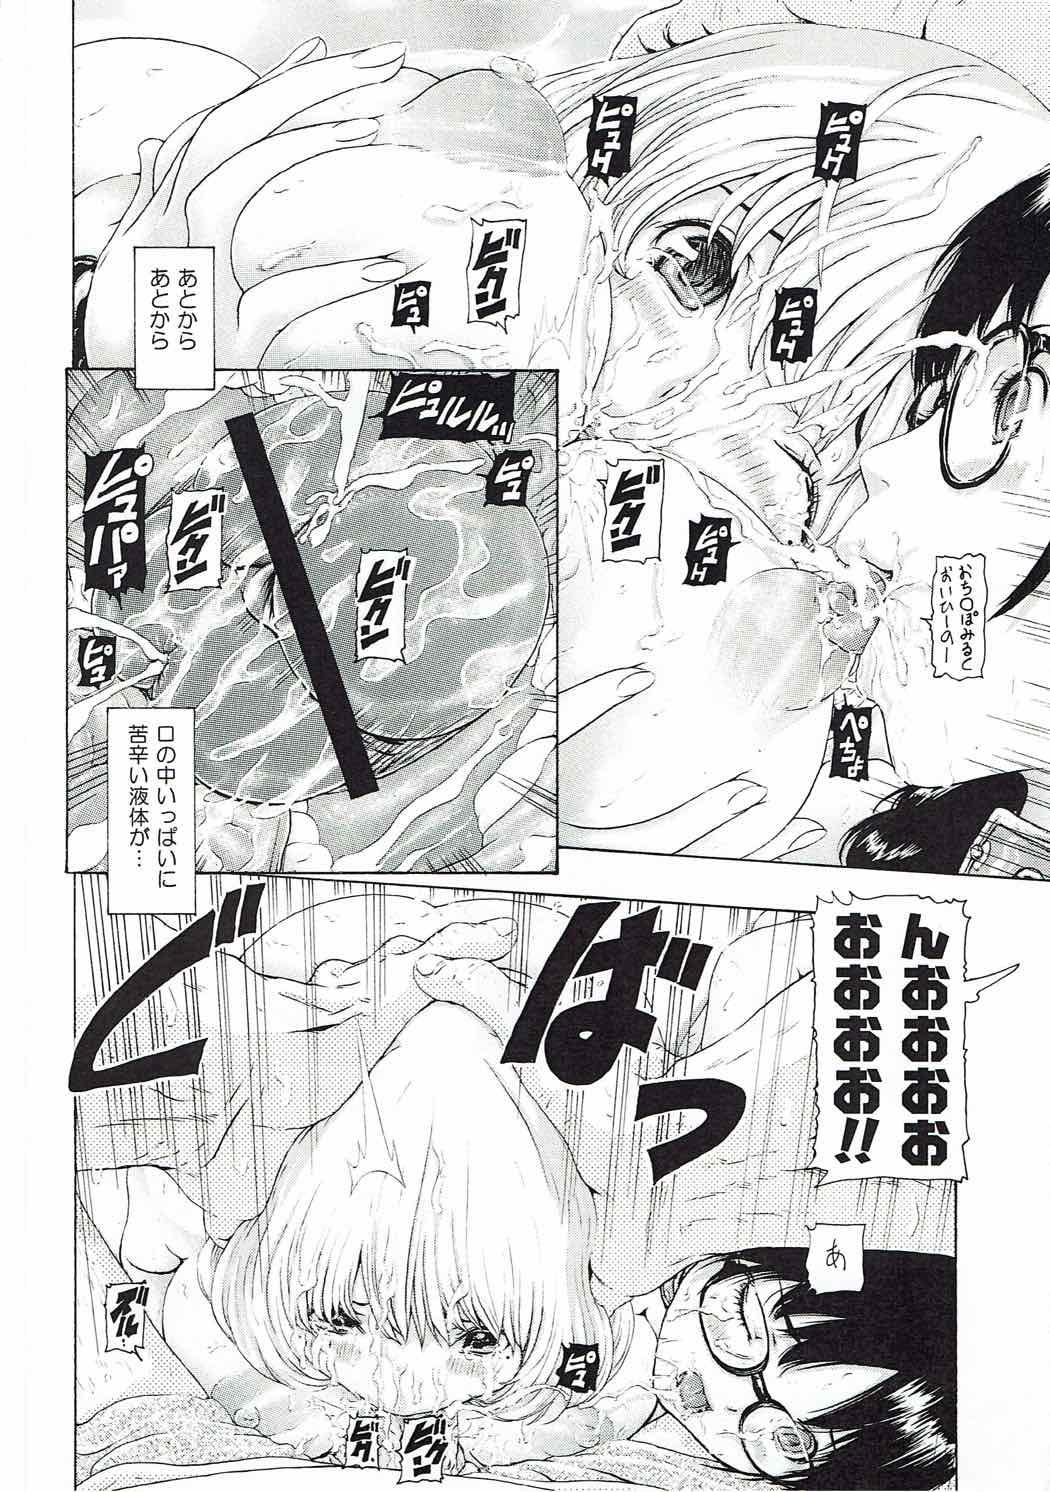 [け ゚ぴけ ゚ぴ(ぬャカな)] MANKOKU漫画家(とアシスタント)残酷物語 (バクマン。) 14